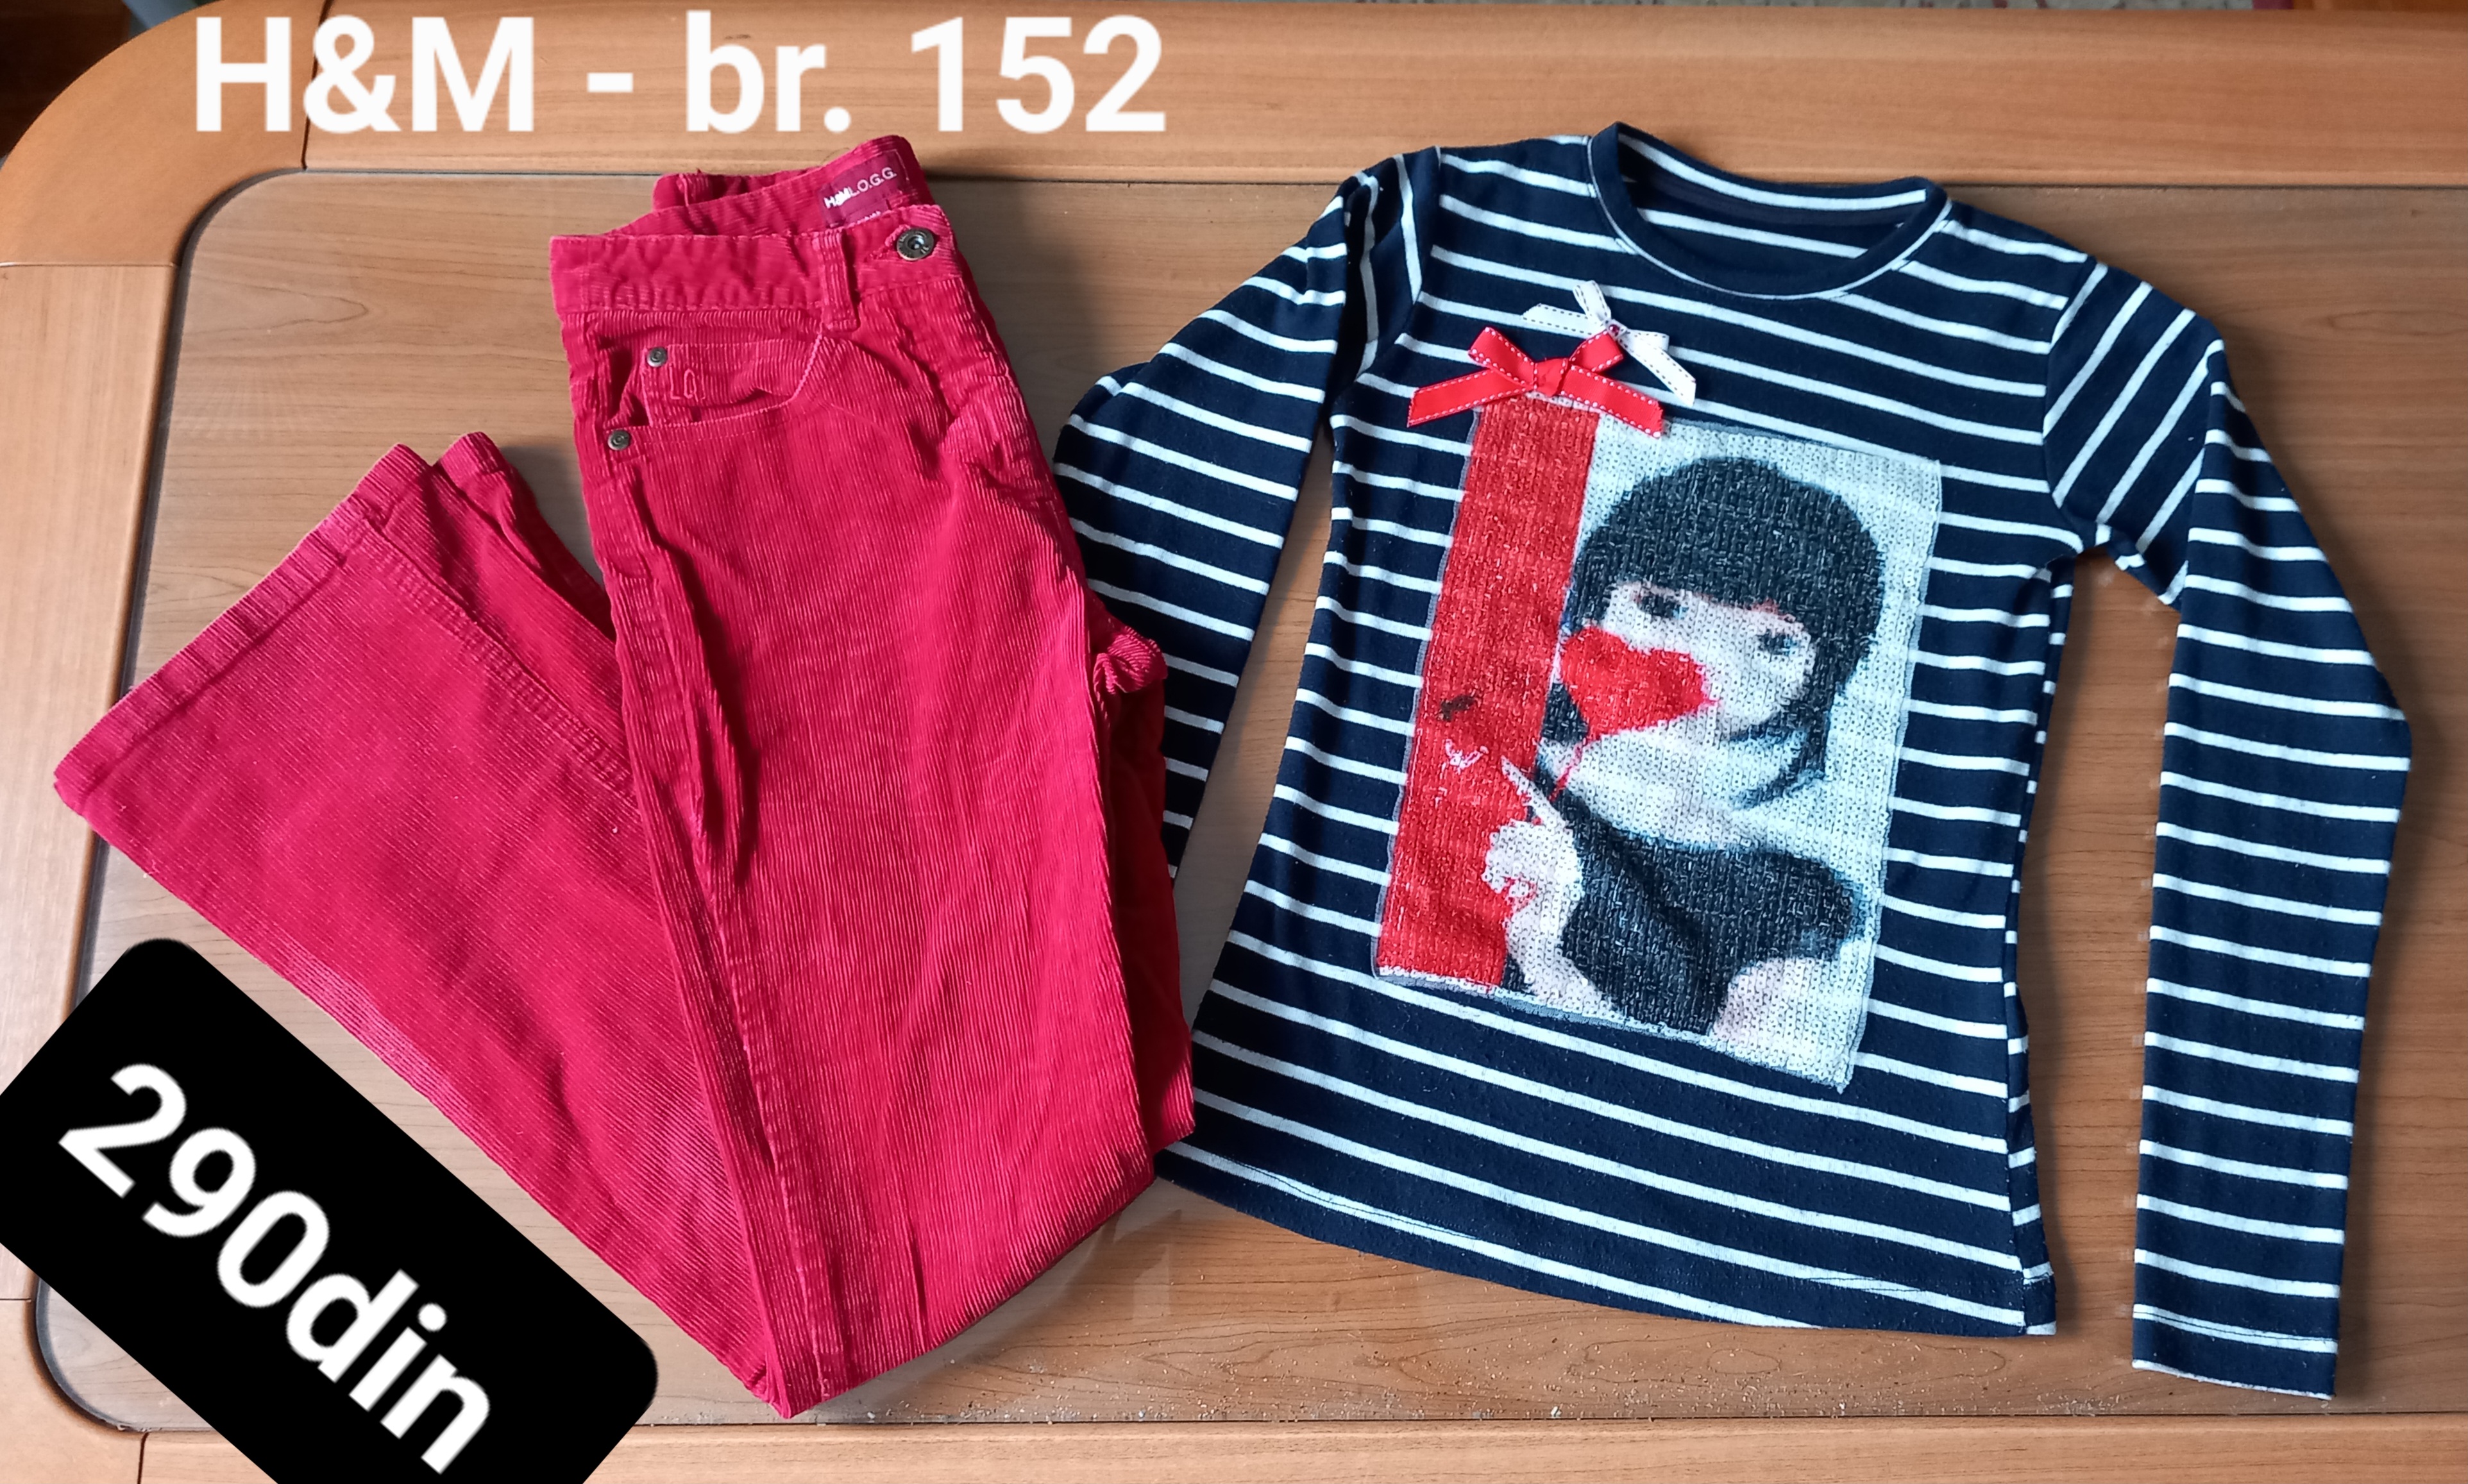 H&M pantalone majica za devojčice br. 152